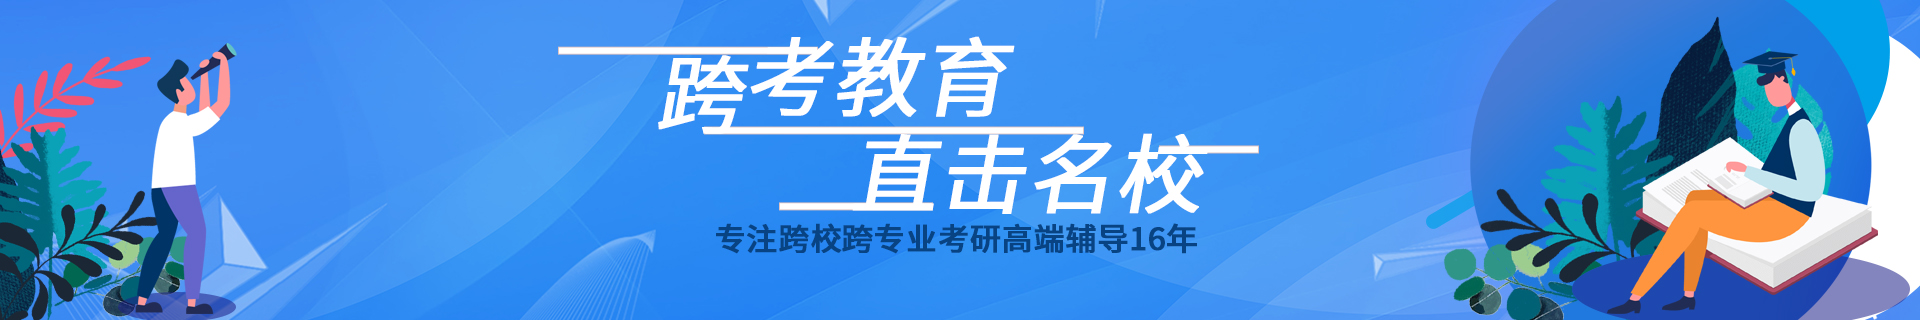 上海浦东跨考教育培训机构